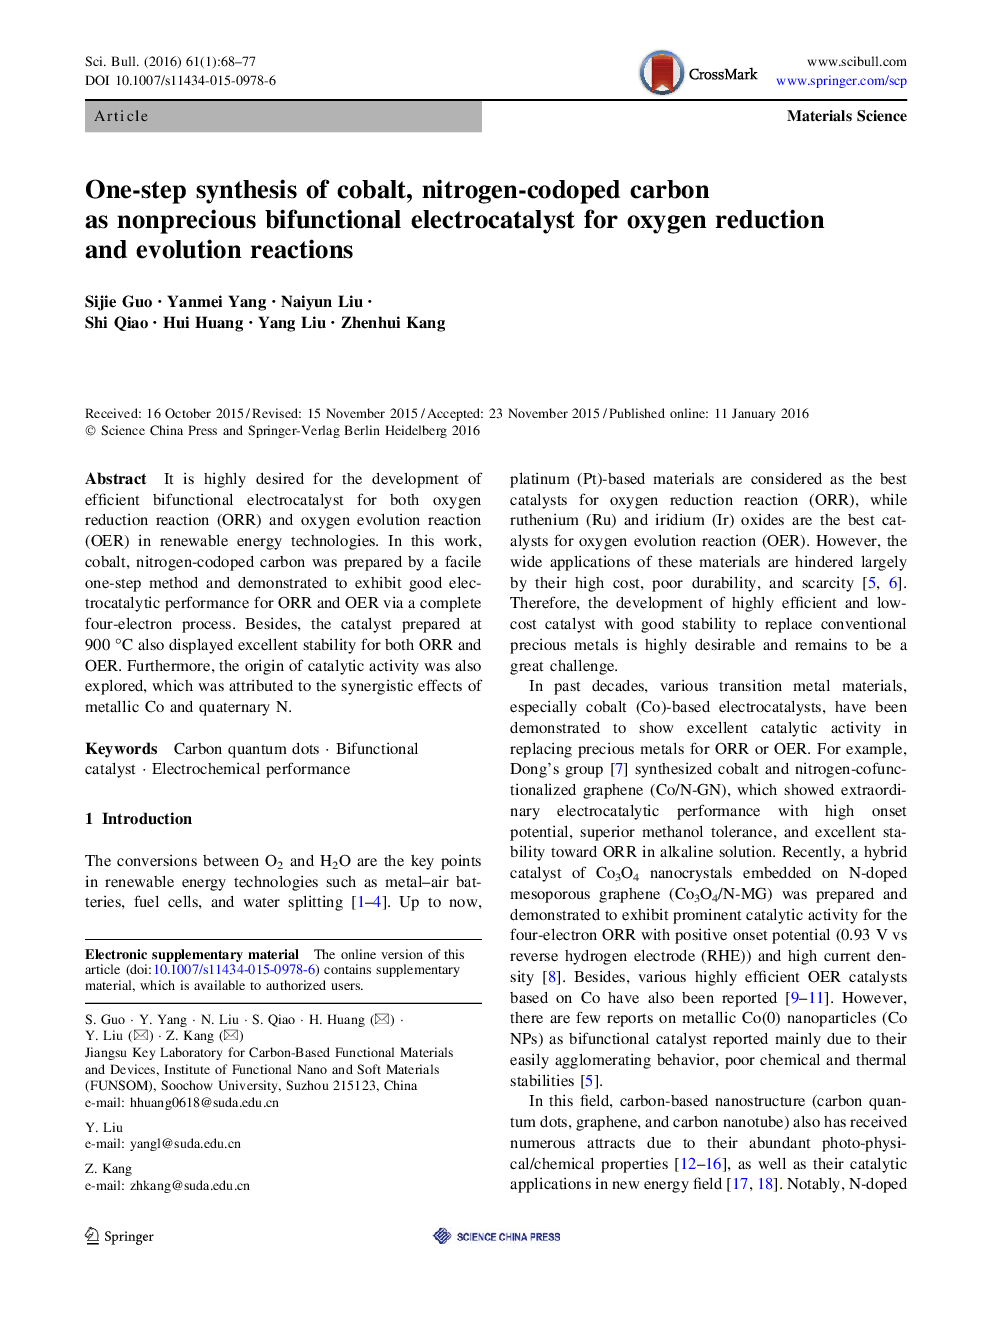 سنتز یک مرحله ای از کبالت، کربن نیتروژن کربن به عنوان غیر الکتریسیتاکیتی بی اختیاری برای کاهش اکسیژن و تکامل واکنش 